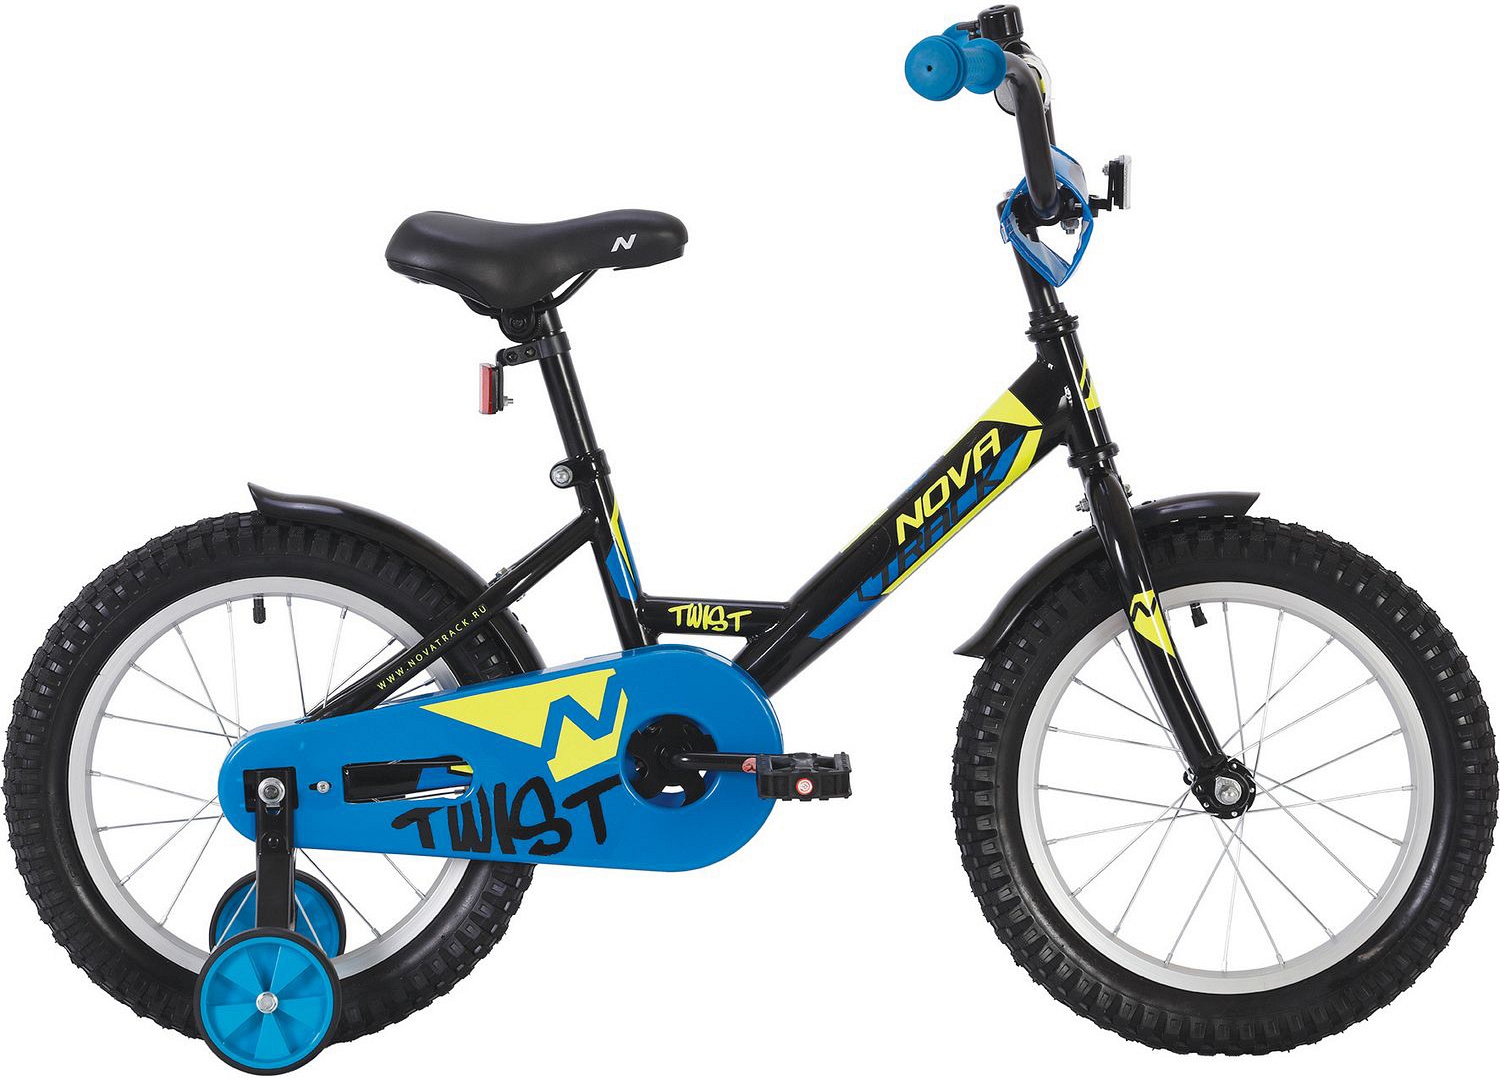  Отзывы о Детском велосипеде Novatrack Twist 20 2020